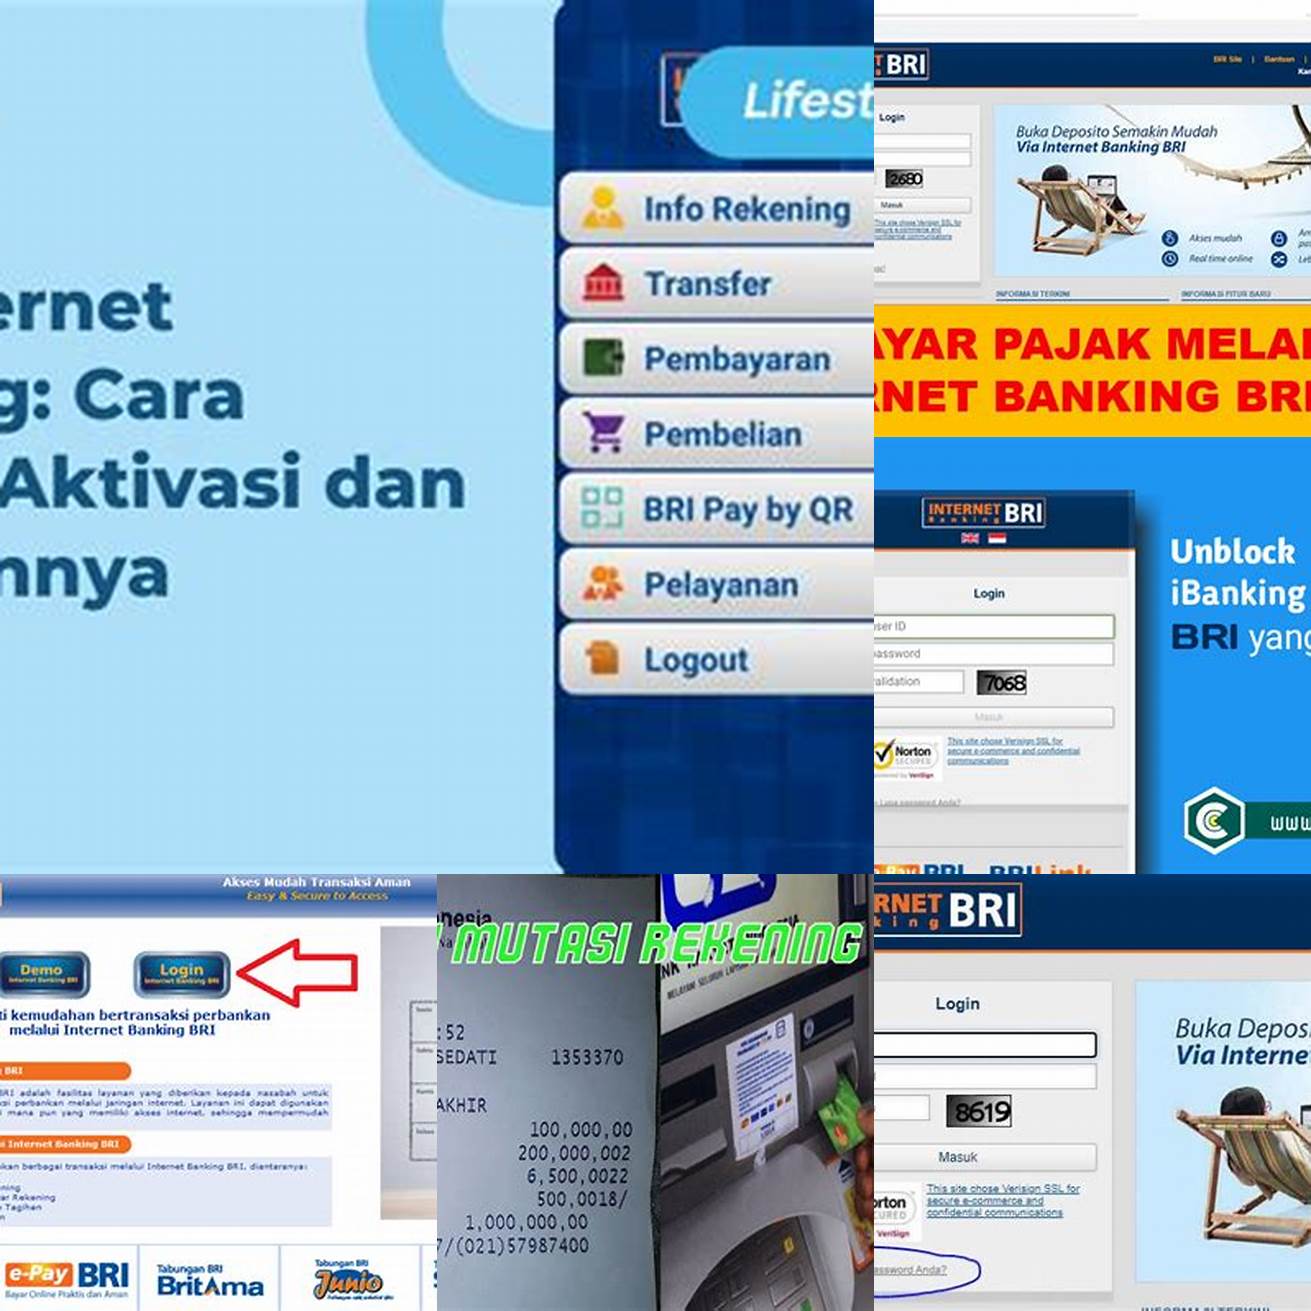 Masuk ke Internet Banking BRI